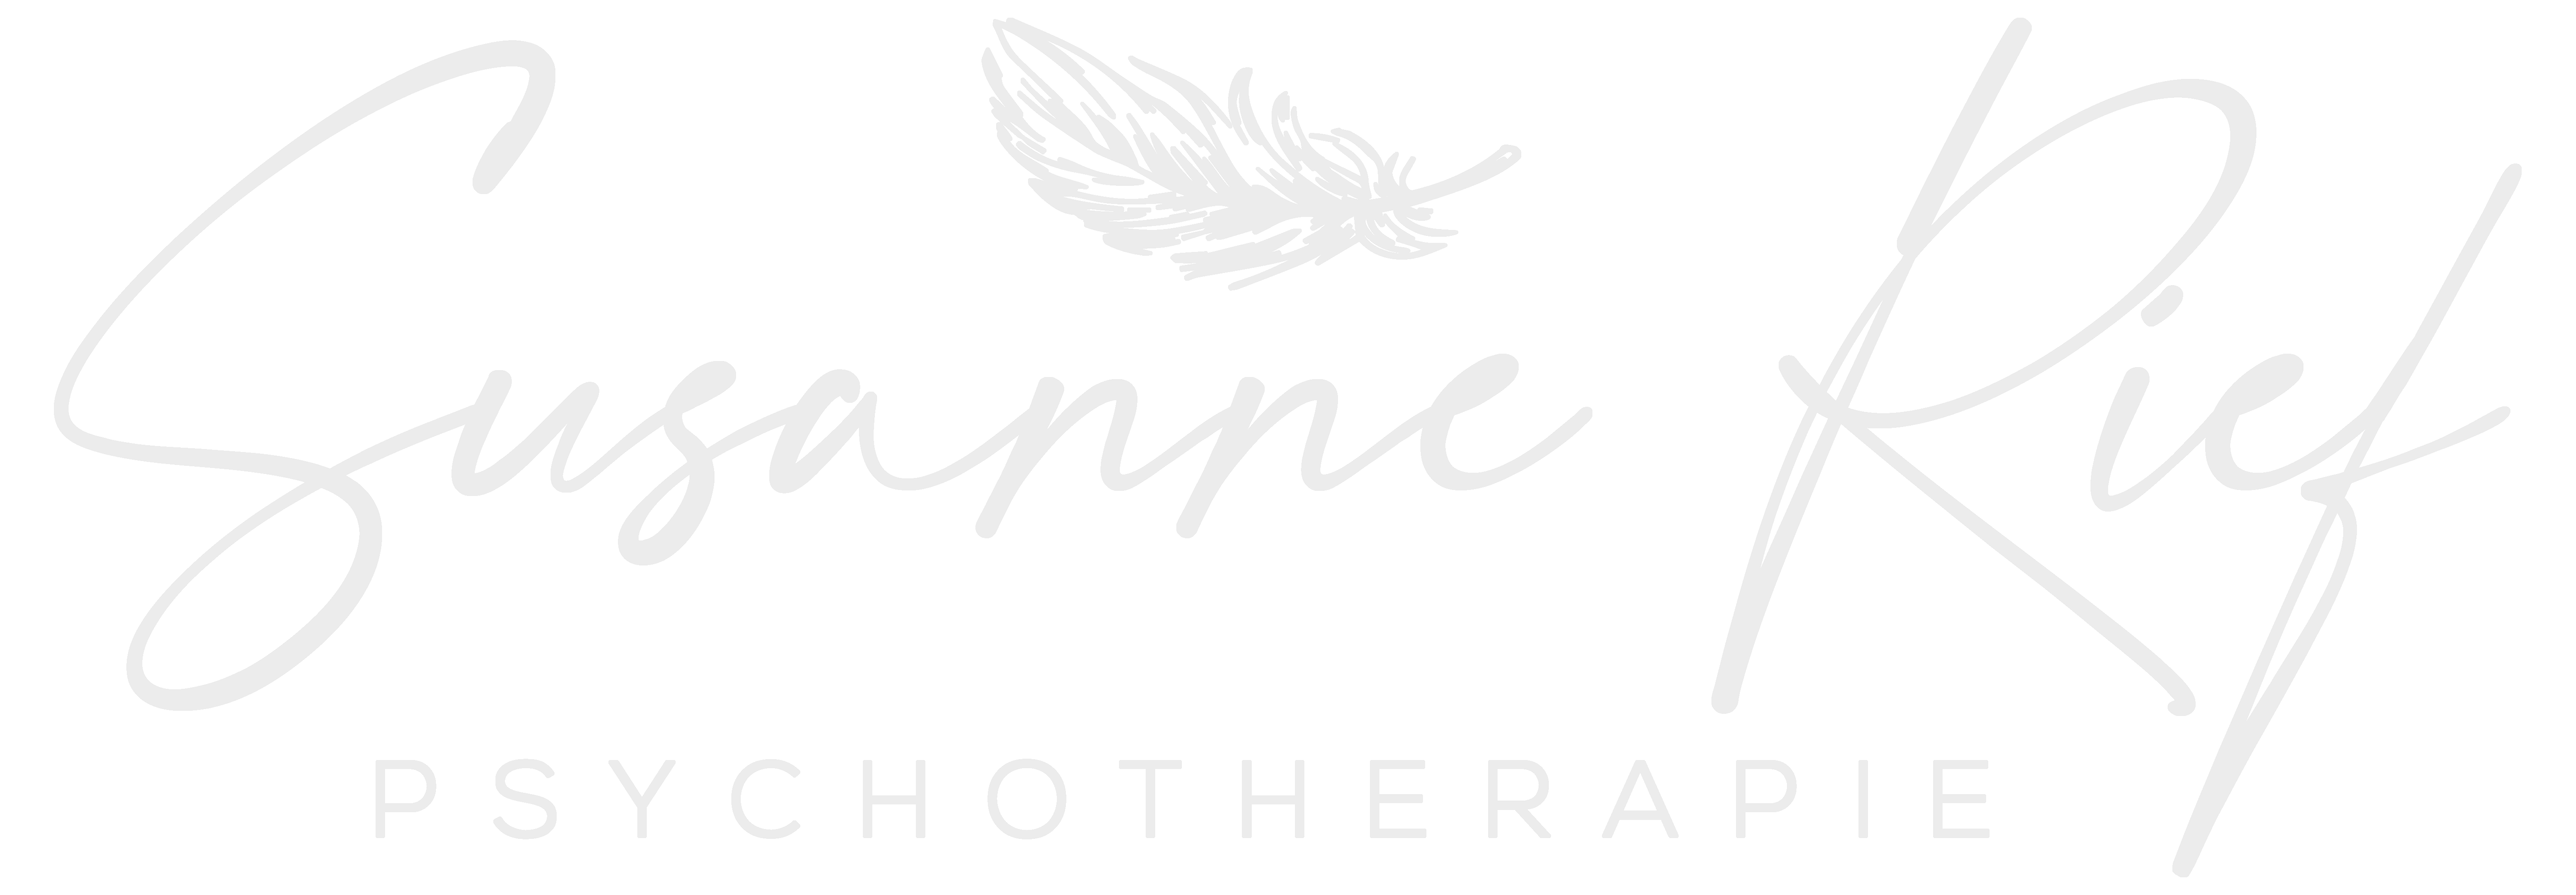 Logo der Psychotherapie Praxis von Susanne Rief